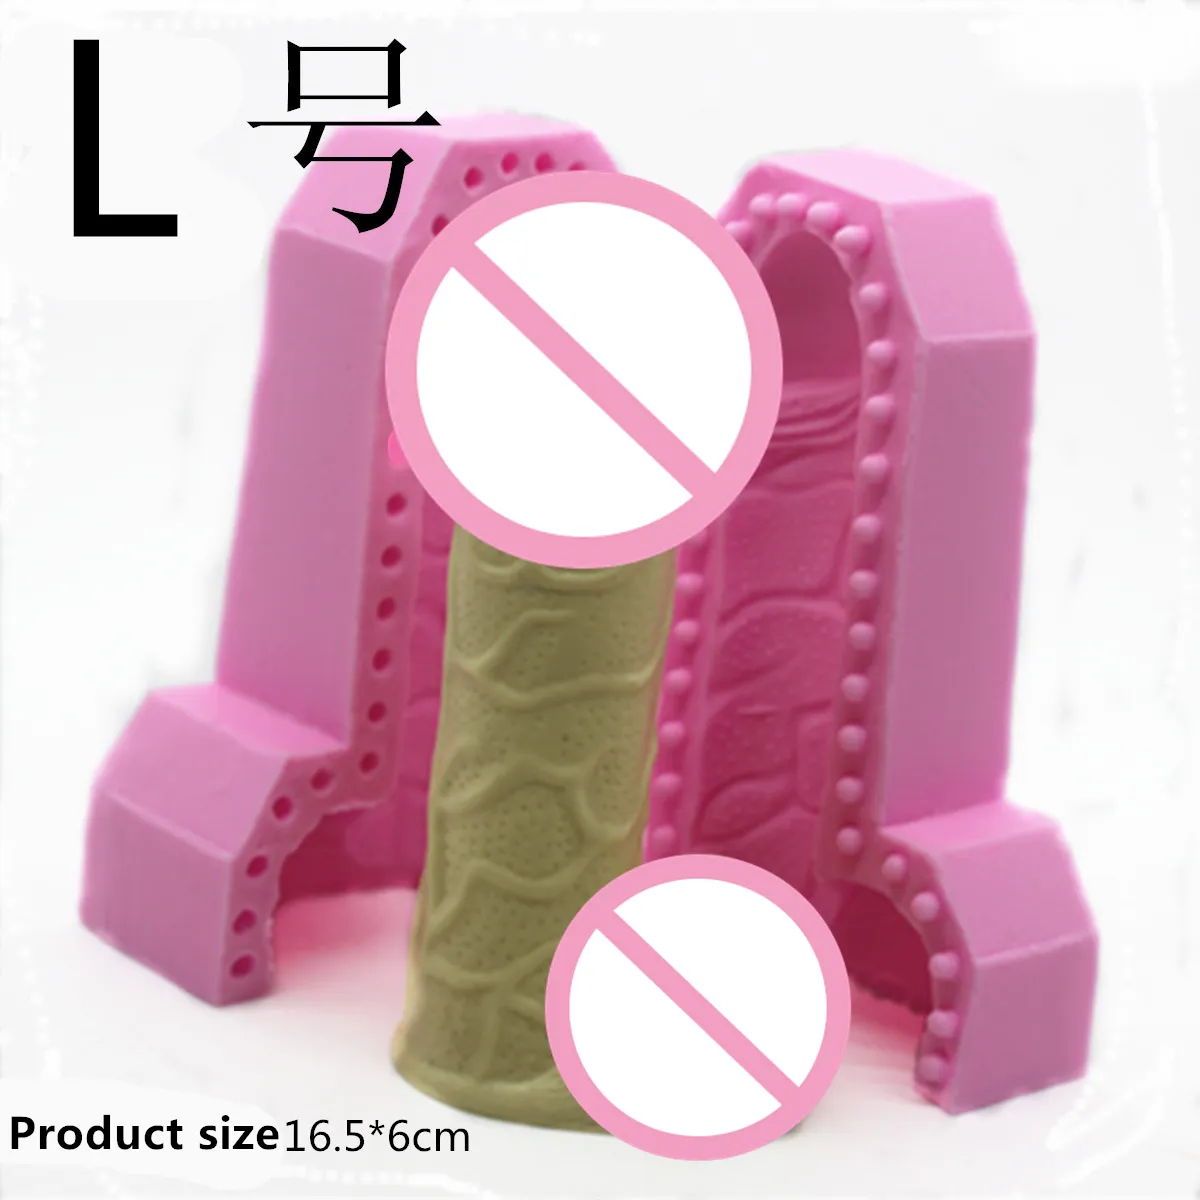 3D Güzellik Penis Silikon Fondan Kek Dekorasyon Araçları Çikolata Kalıp Sabun Mum Kalıpları E868 201.023